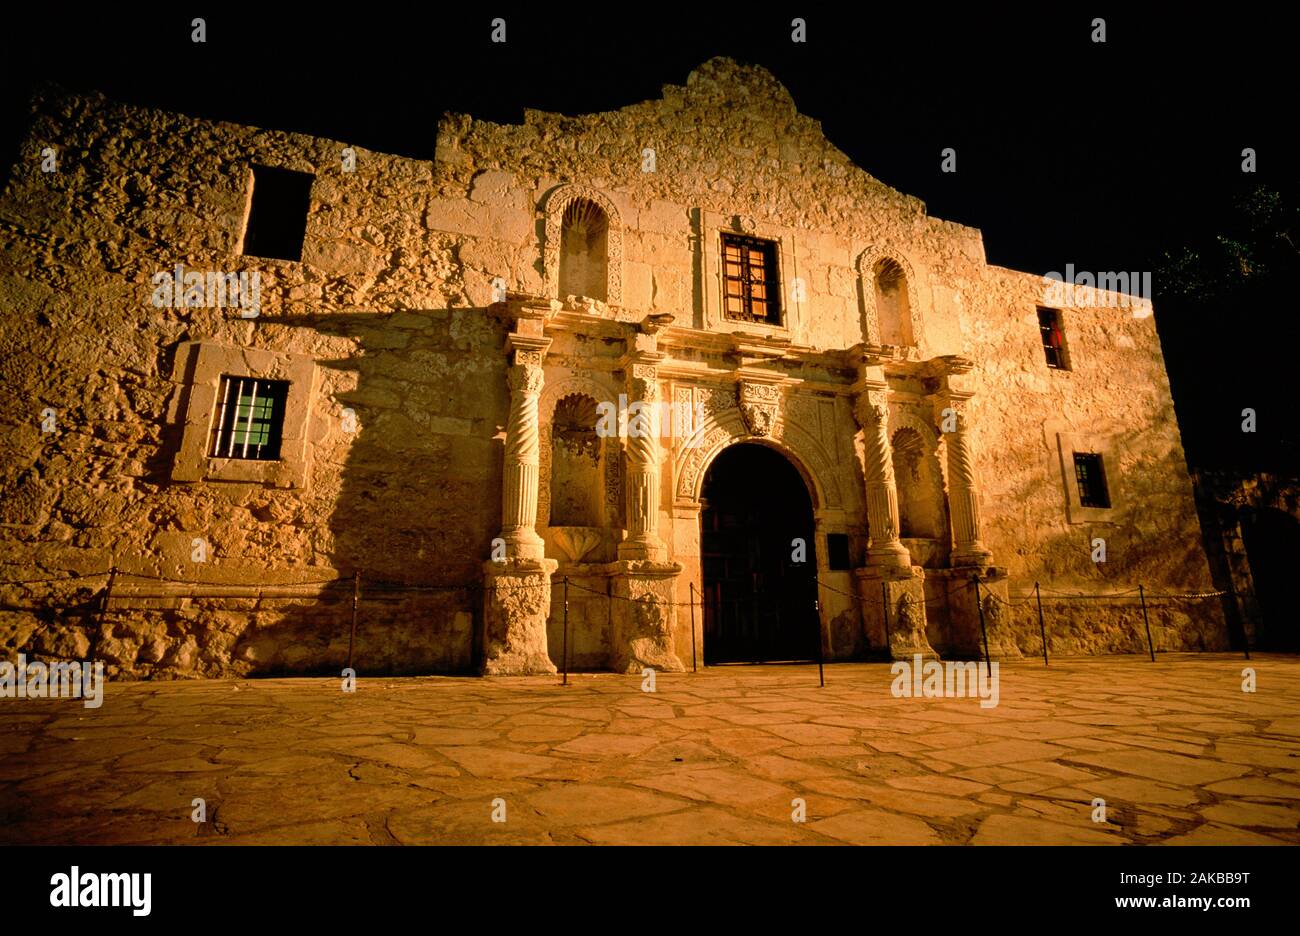 The Alamo museum building exterior at night, San Antonio, Texas, USA Stock Photo